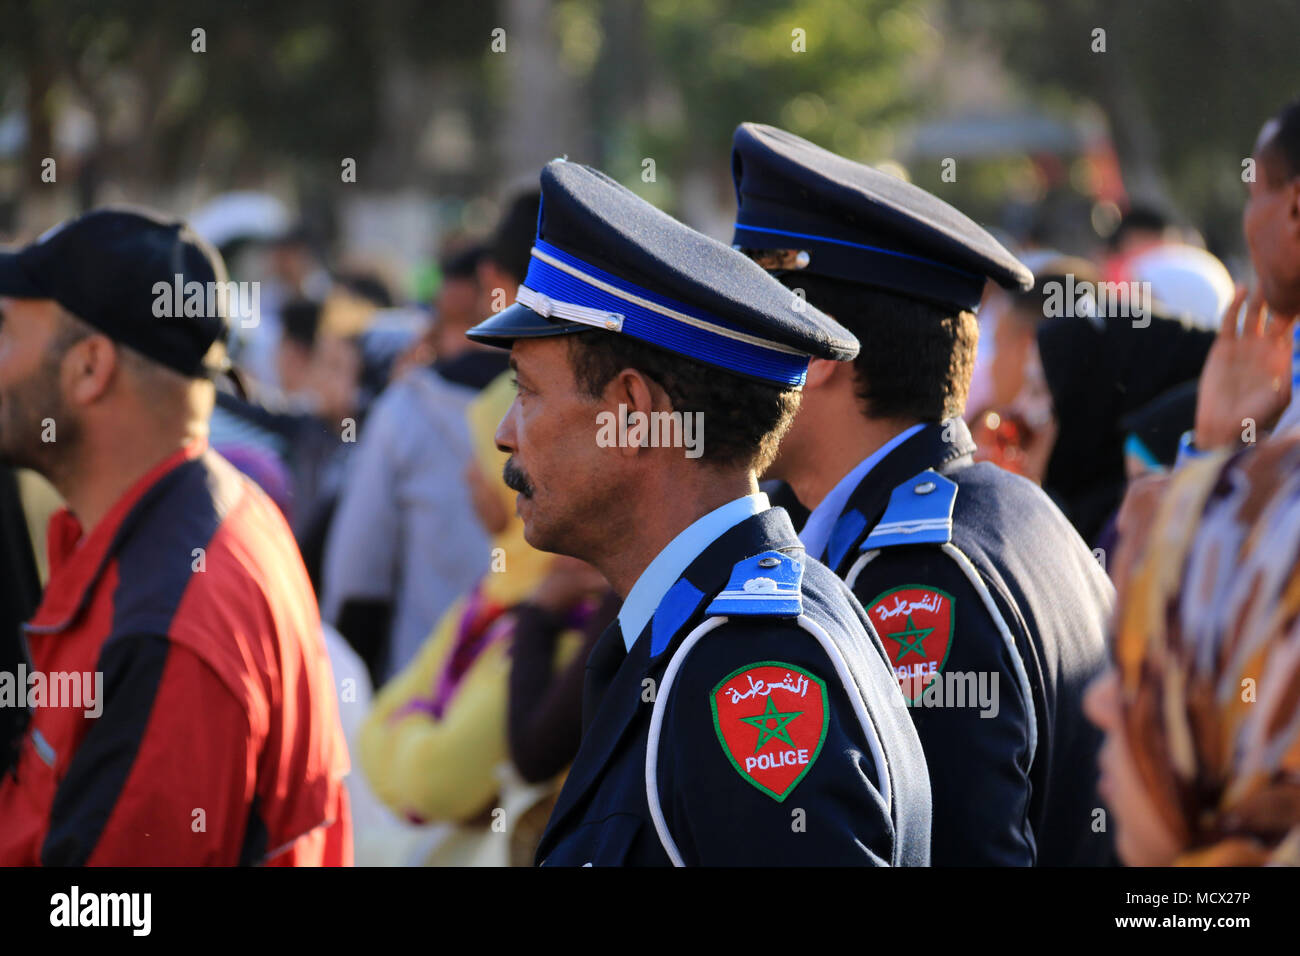 Dos agentes de la policía marroquí con vistas a las escenas en la famosa plaza Jemaa el Fnaa, en Marrakech, Marruecos Foto de stock